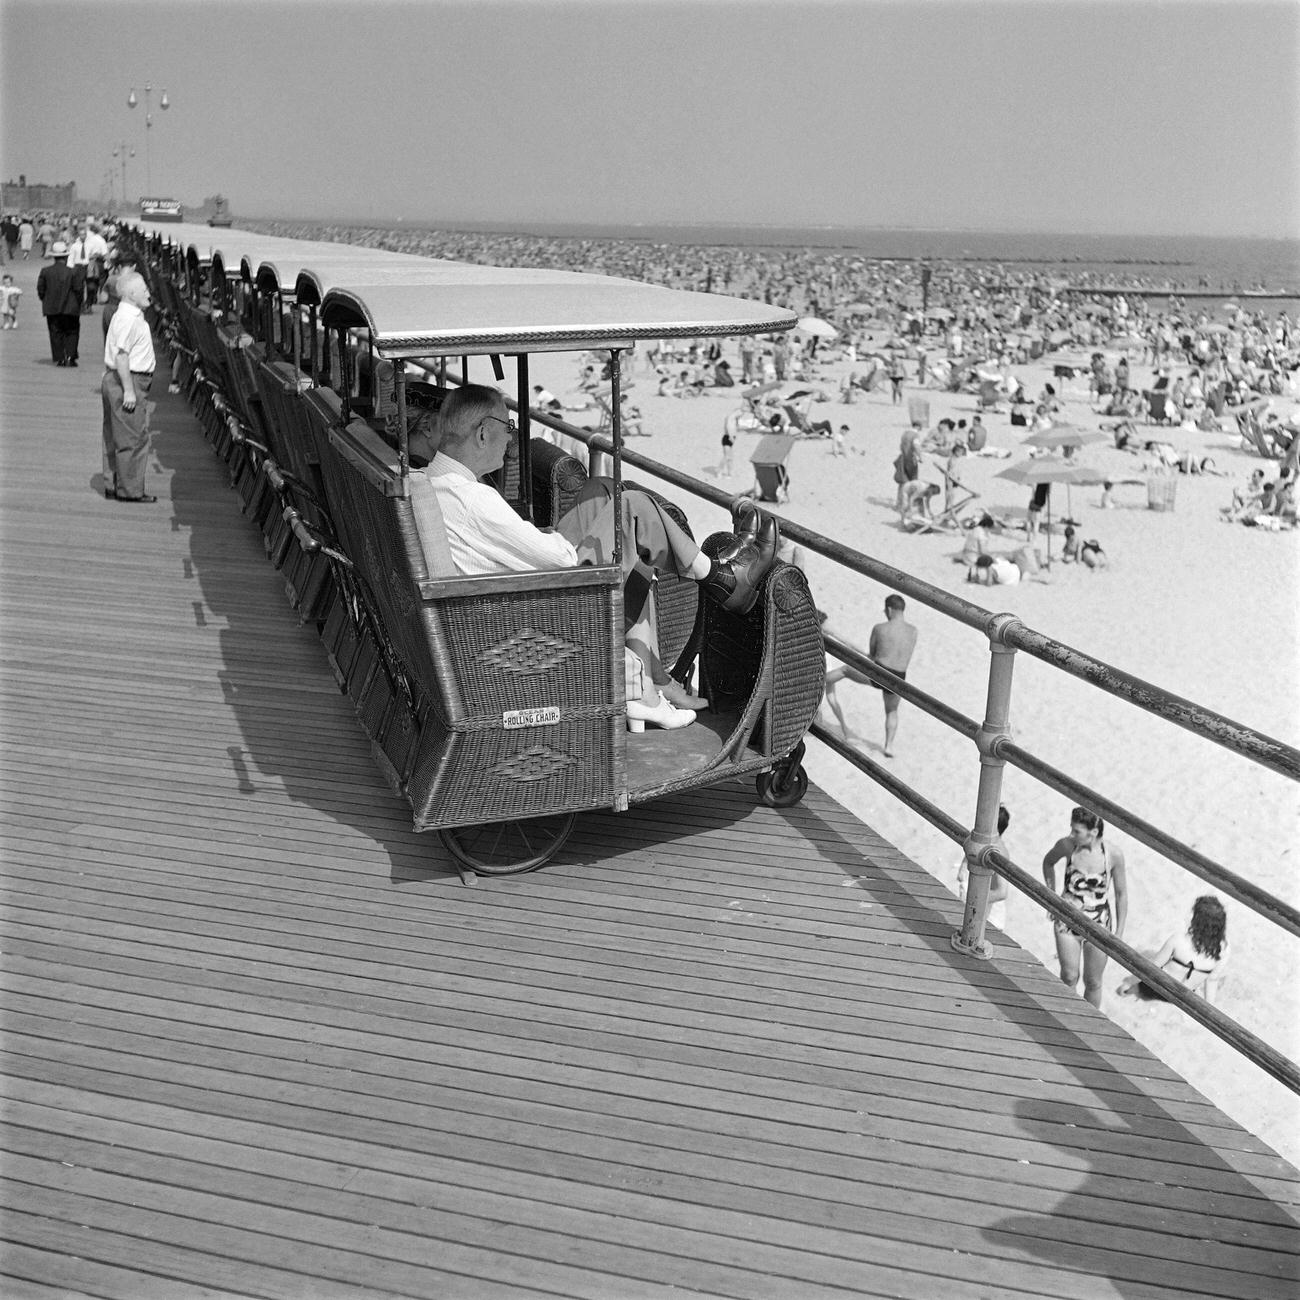 Crowded Riegelmann Boardwalk At Coney Island, Brooklyn, 1946.